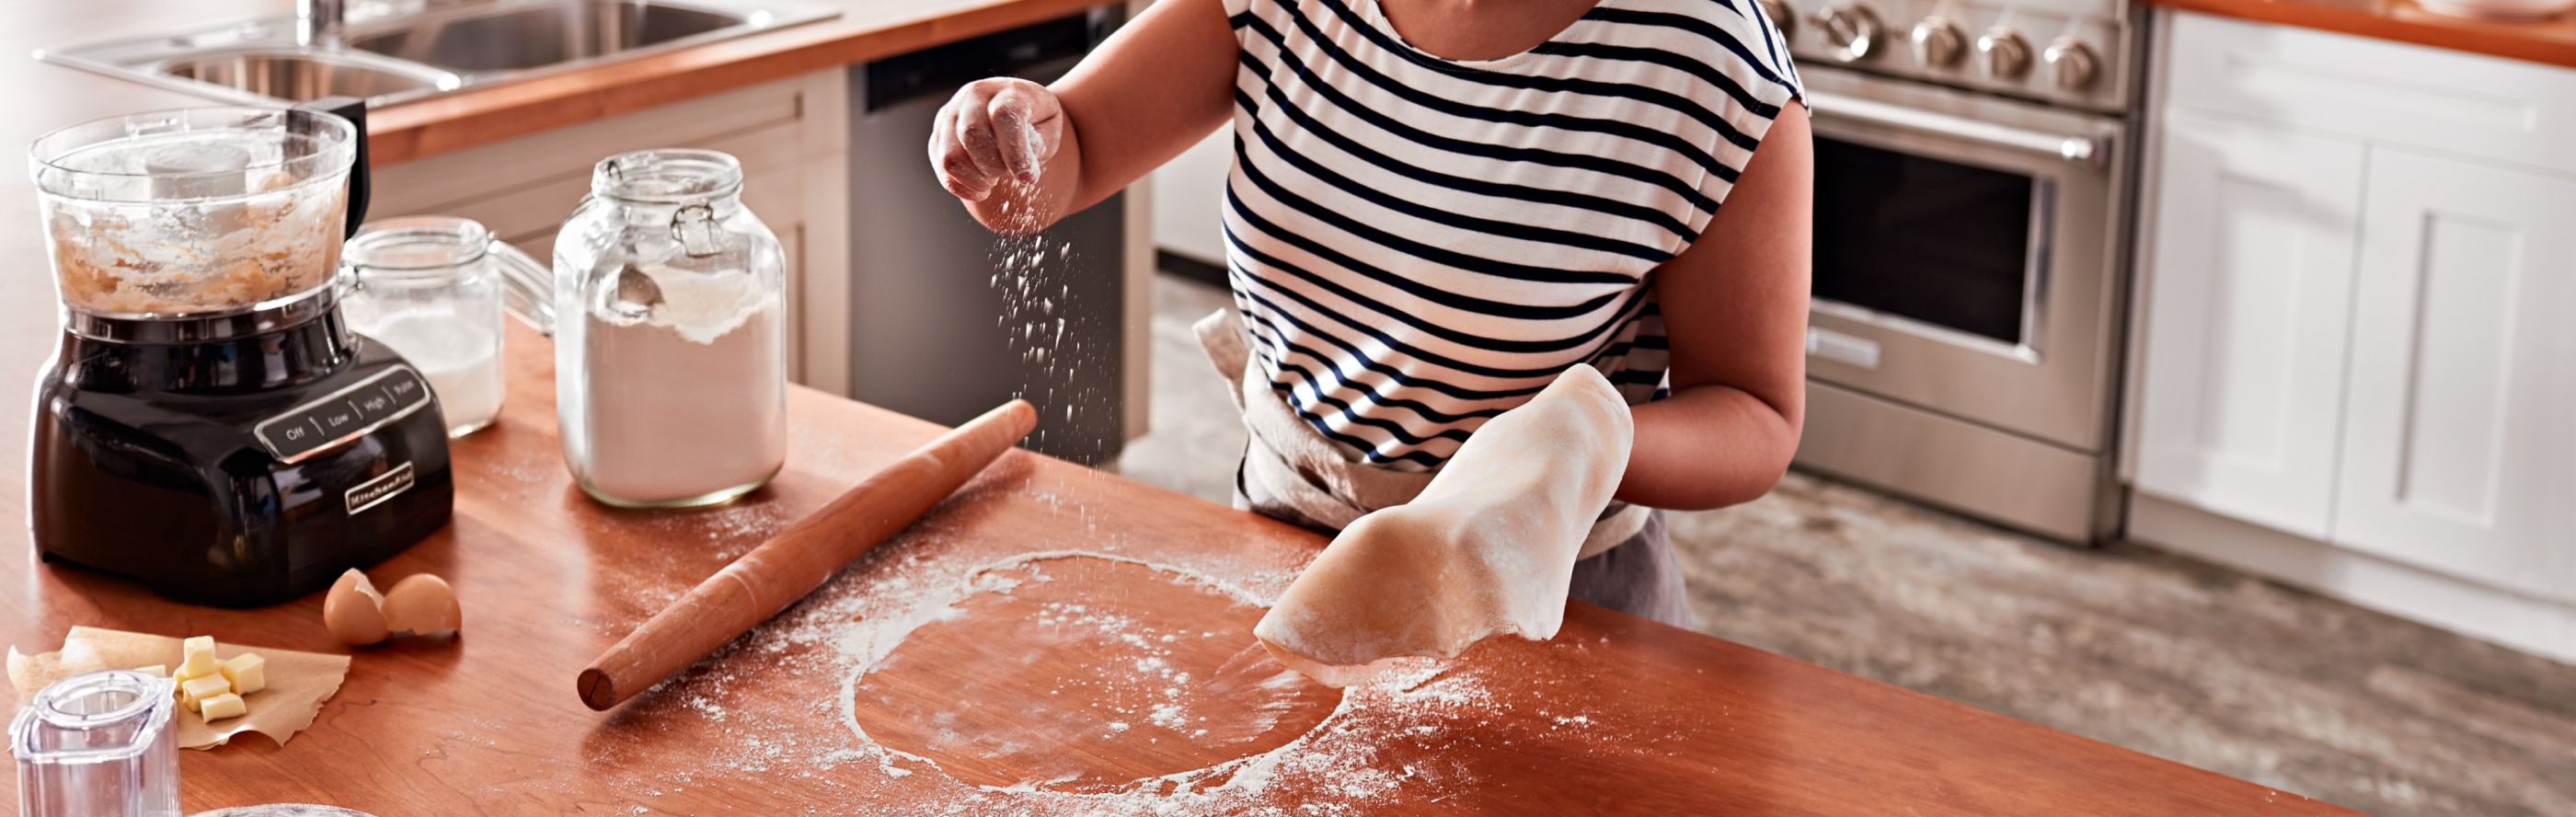 A woman preparing dough